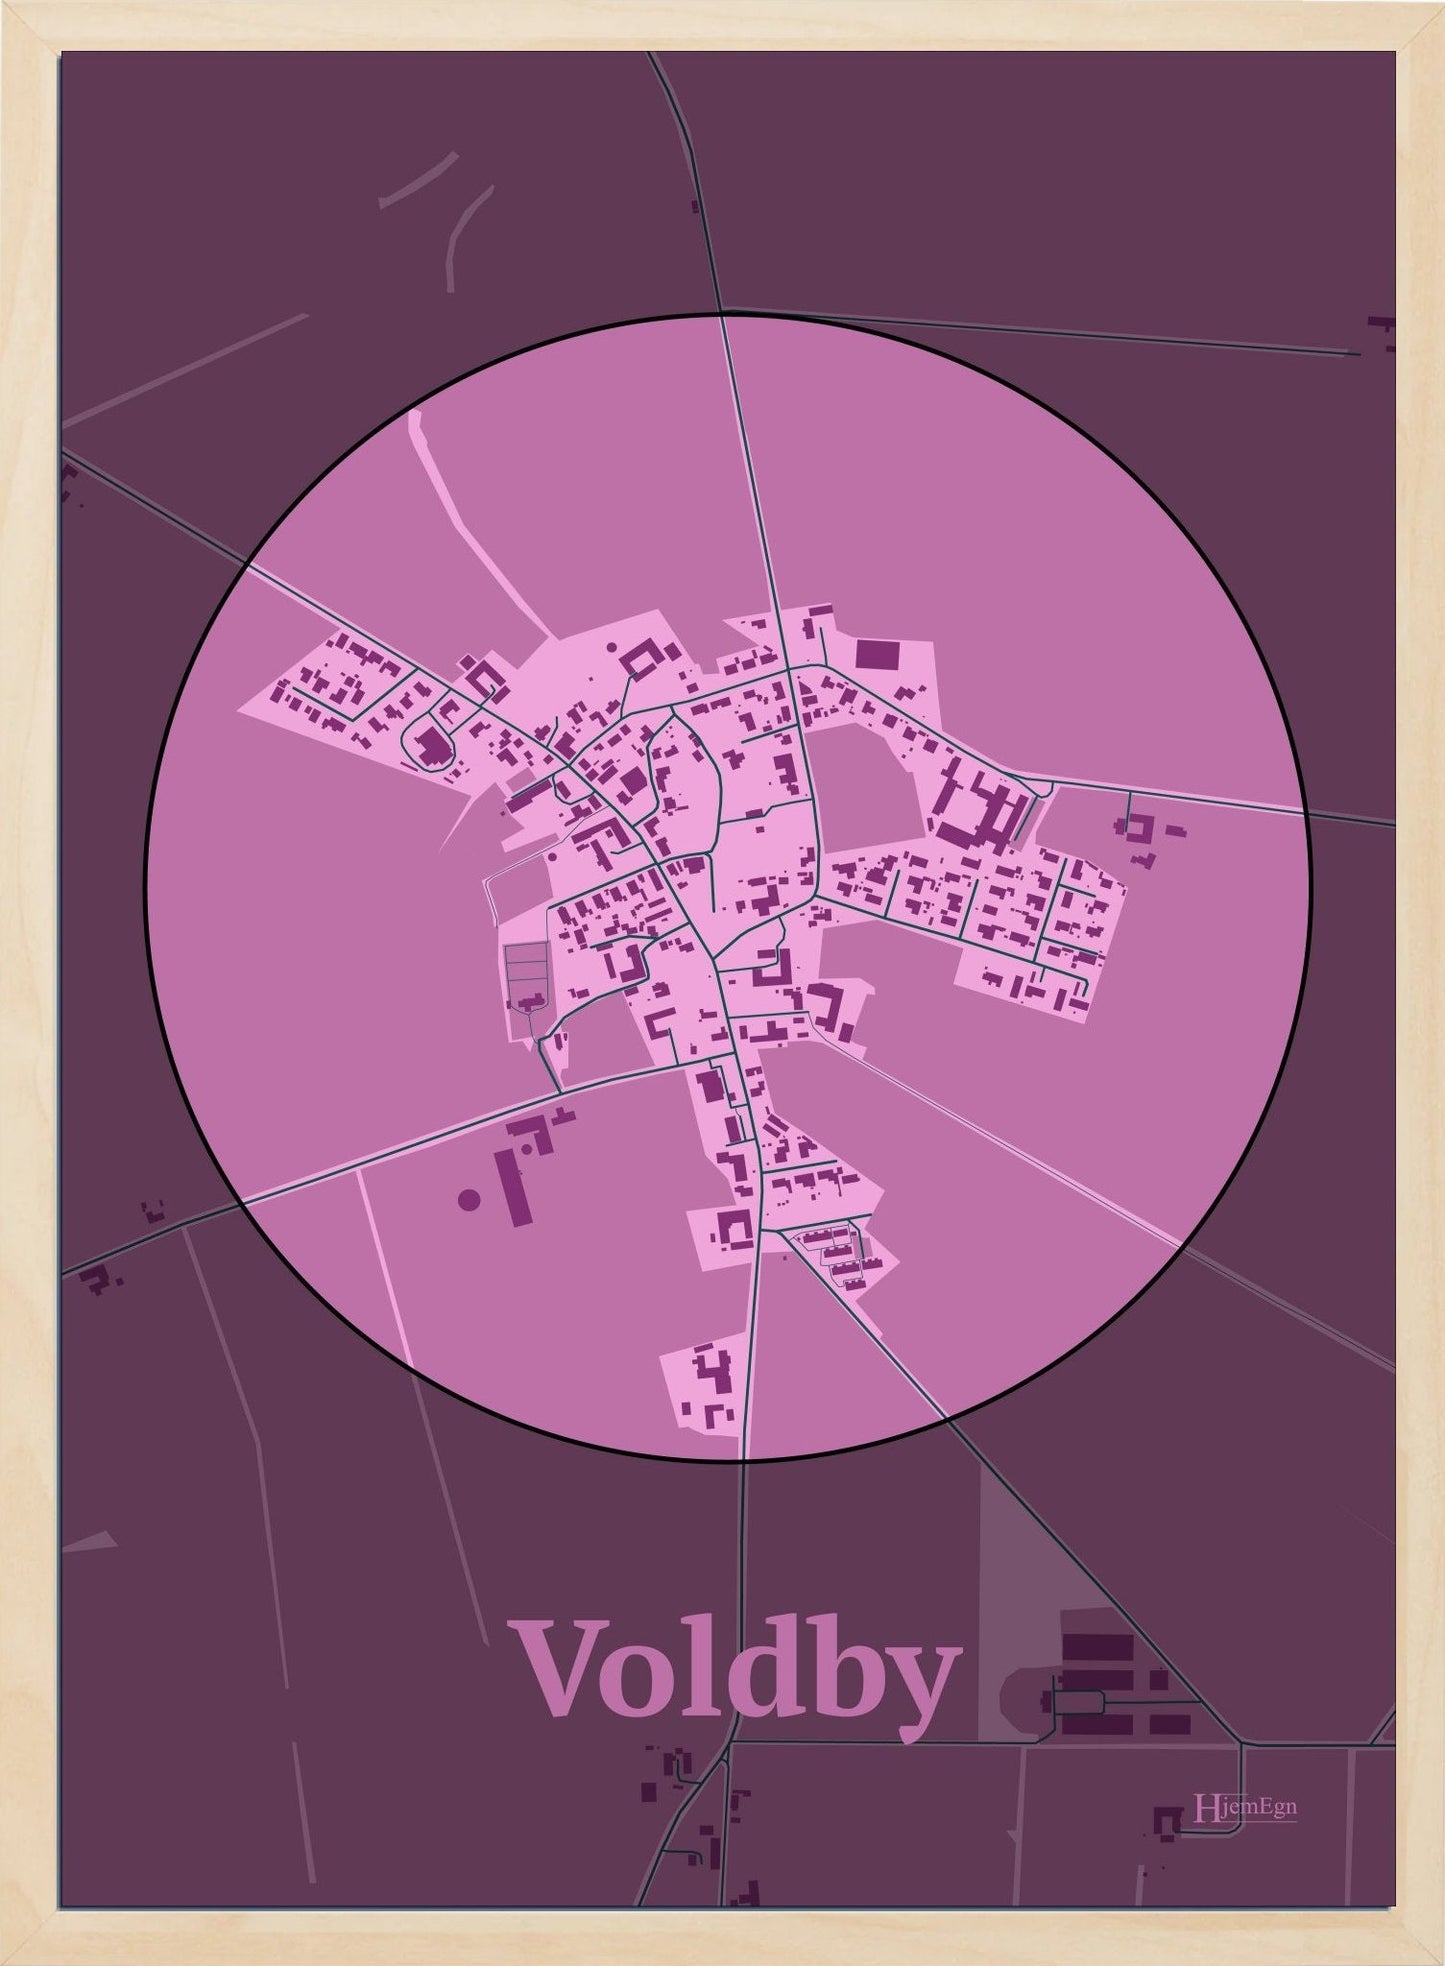 Voldby plakat i farve pastel rød og HjemEgn.dk design centrum. Design bykort for Voldby